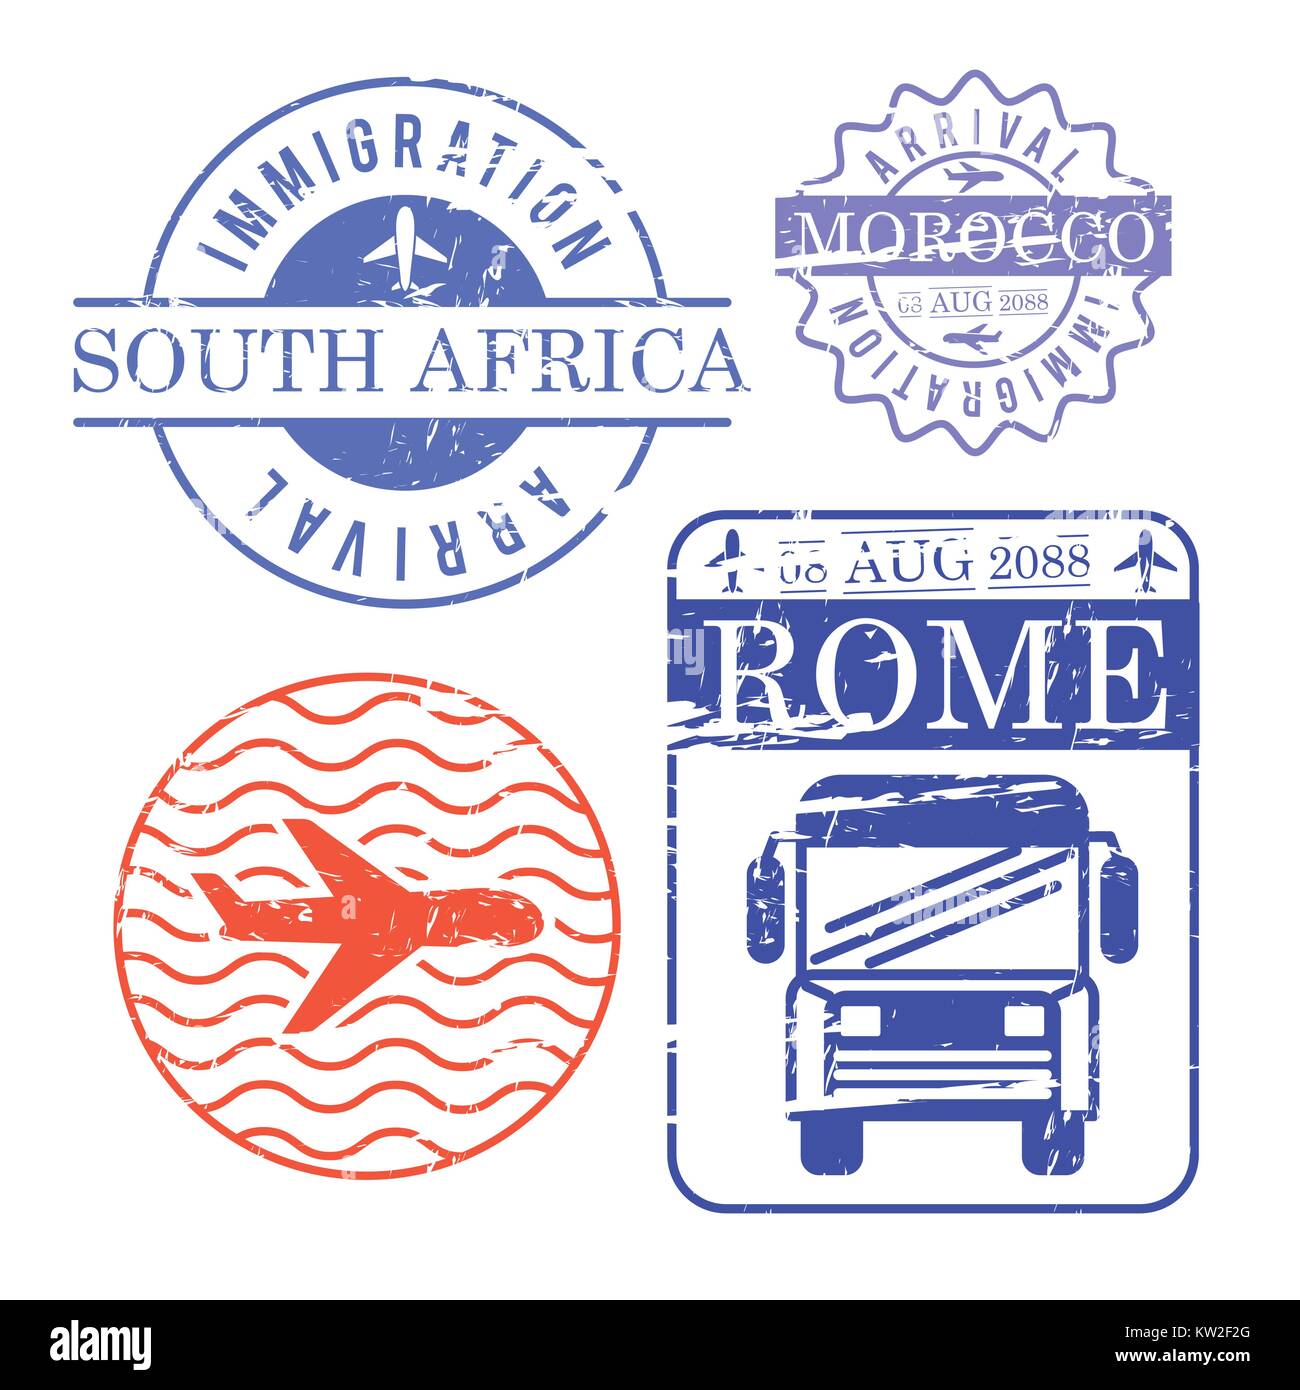 Flugzeug und Bus Reisen Briefmarken Südafrika Marokko und Rom in bunten Silhouette Stock Vektor